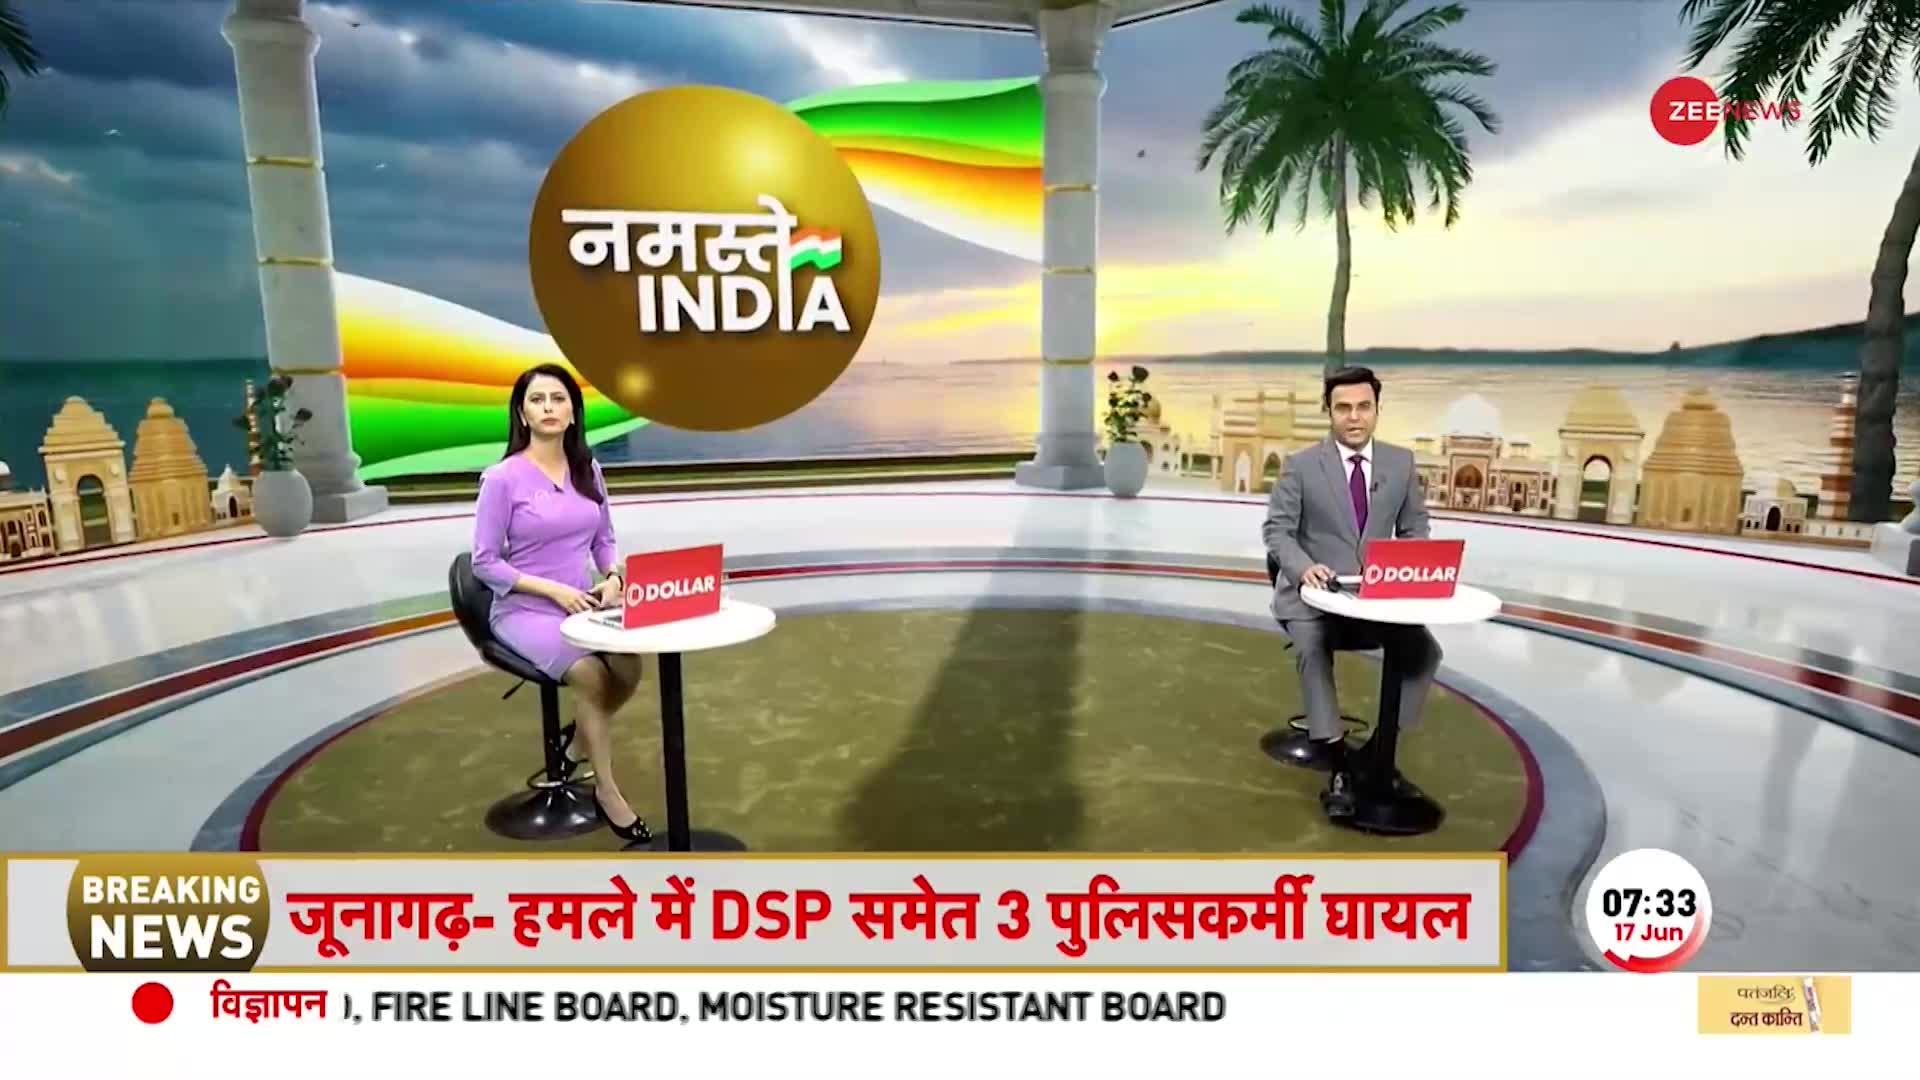 Breaking News: गुजरात के बाद राजस्थान की तरफ बढ़ा बिपरजॉय, मौसम विभाग ने जारी किया अलर्ट